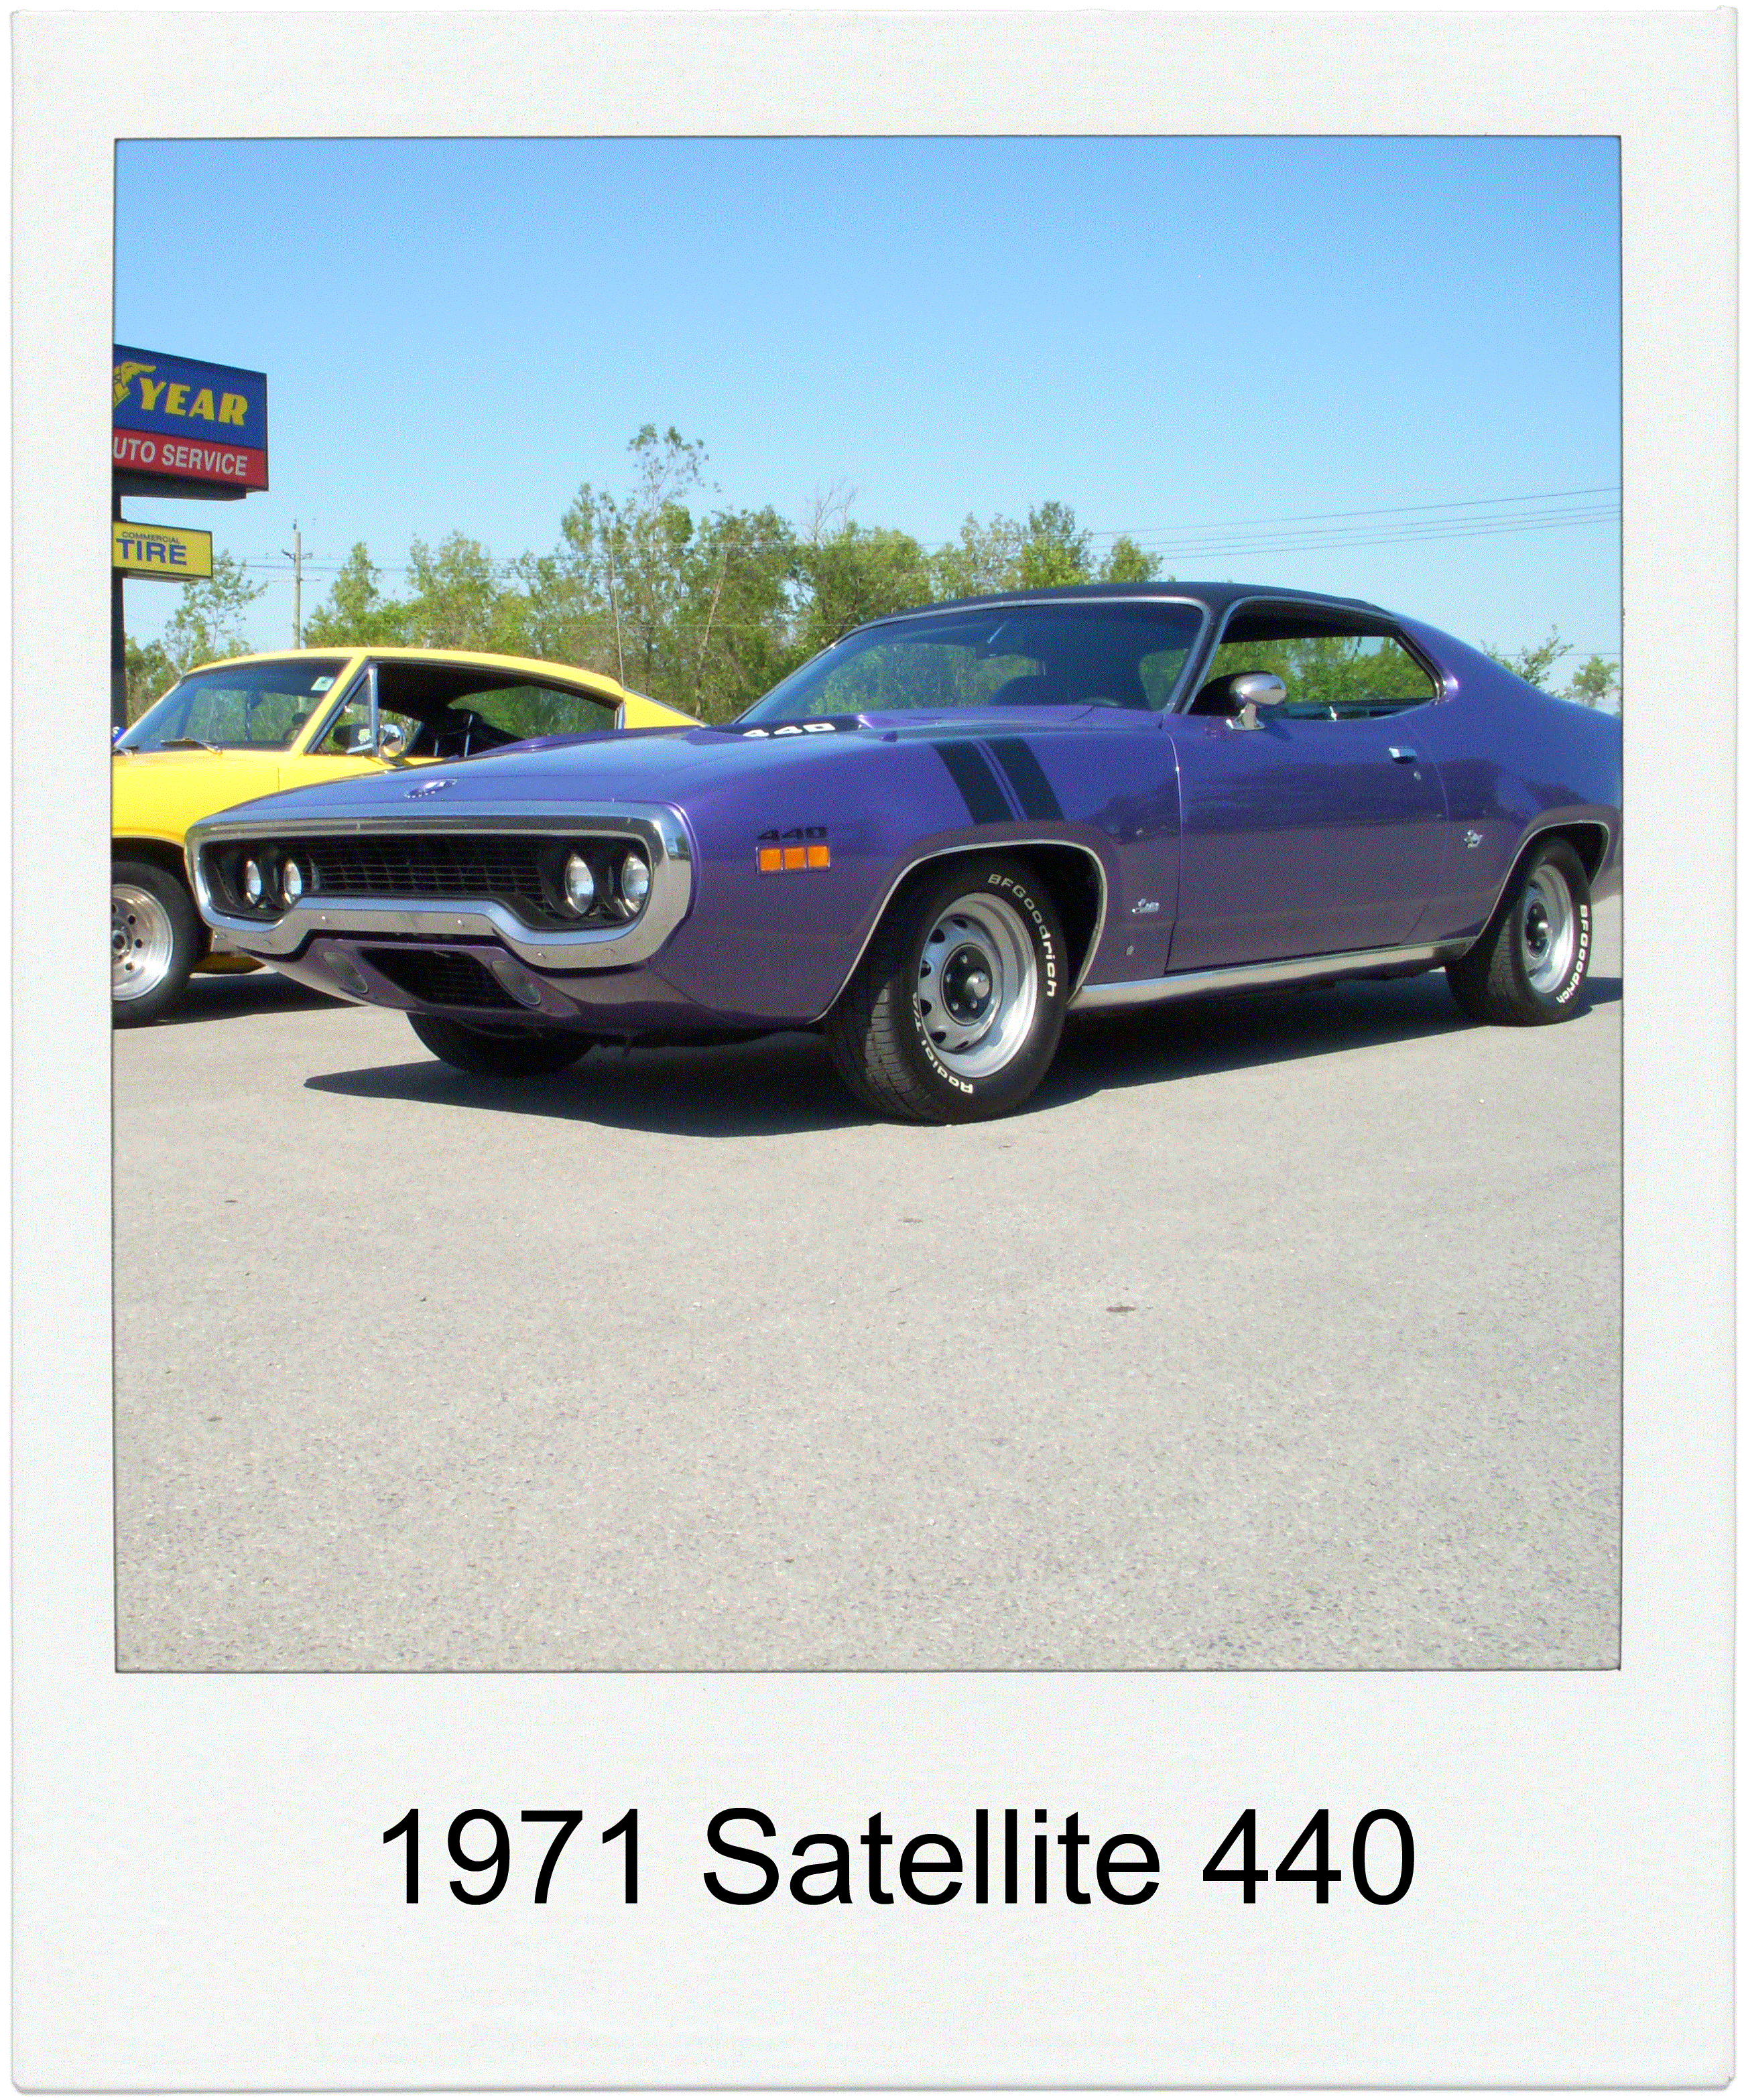 1971 Satellite 440